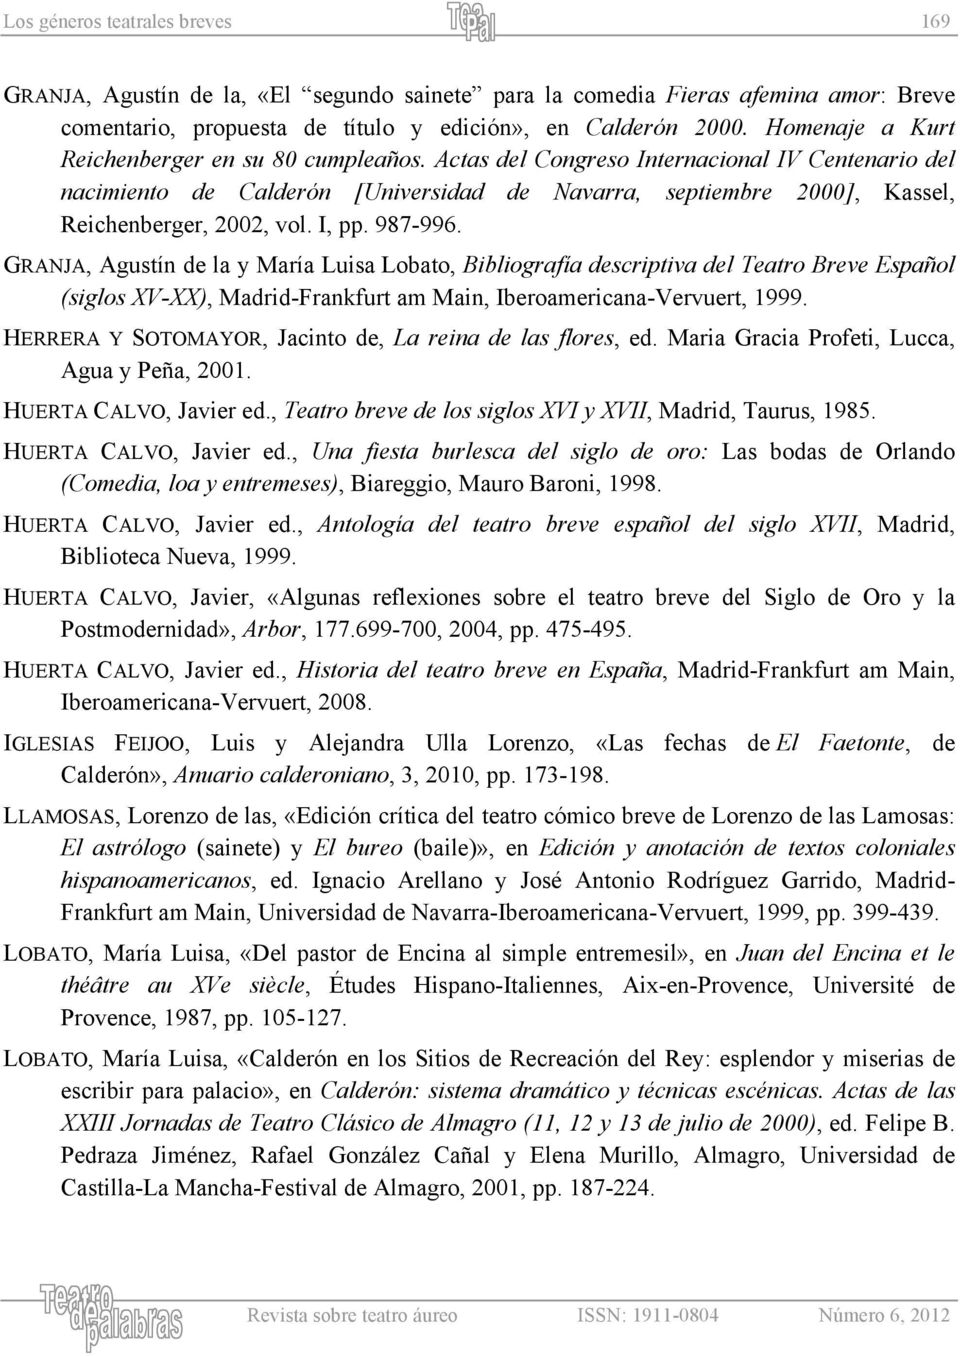 Actas del Congreso Internacional IV Centenario del nacimiento de Calderón [Universidad de Navarra, septiembre 2000], Kassel, Reichenberger, 2002, vol. I, pp. 987-996.